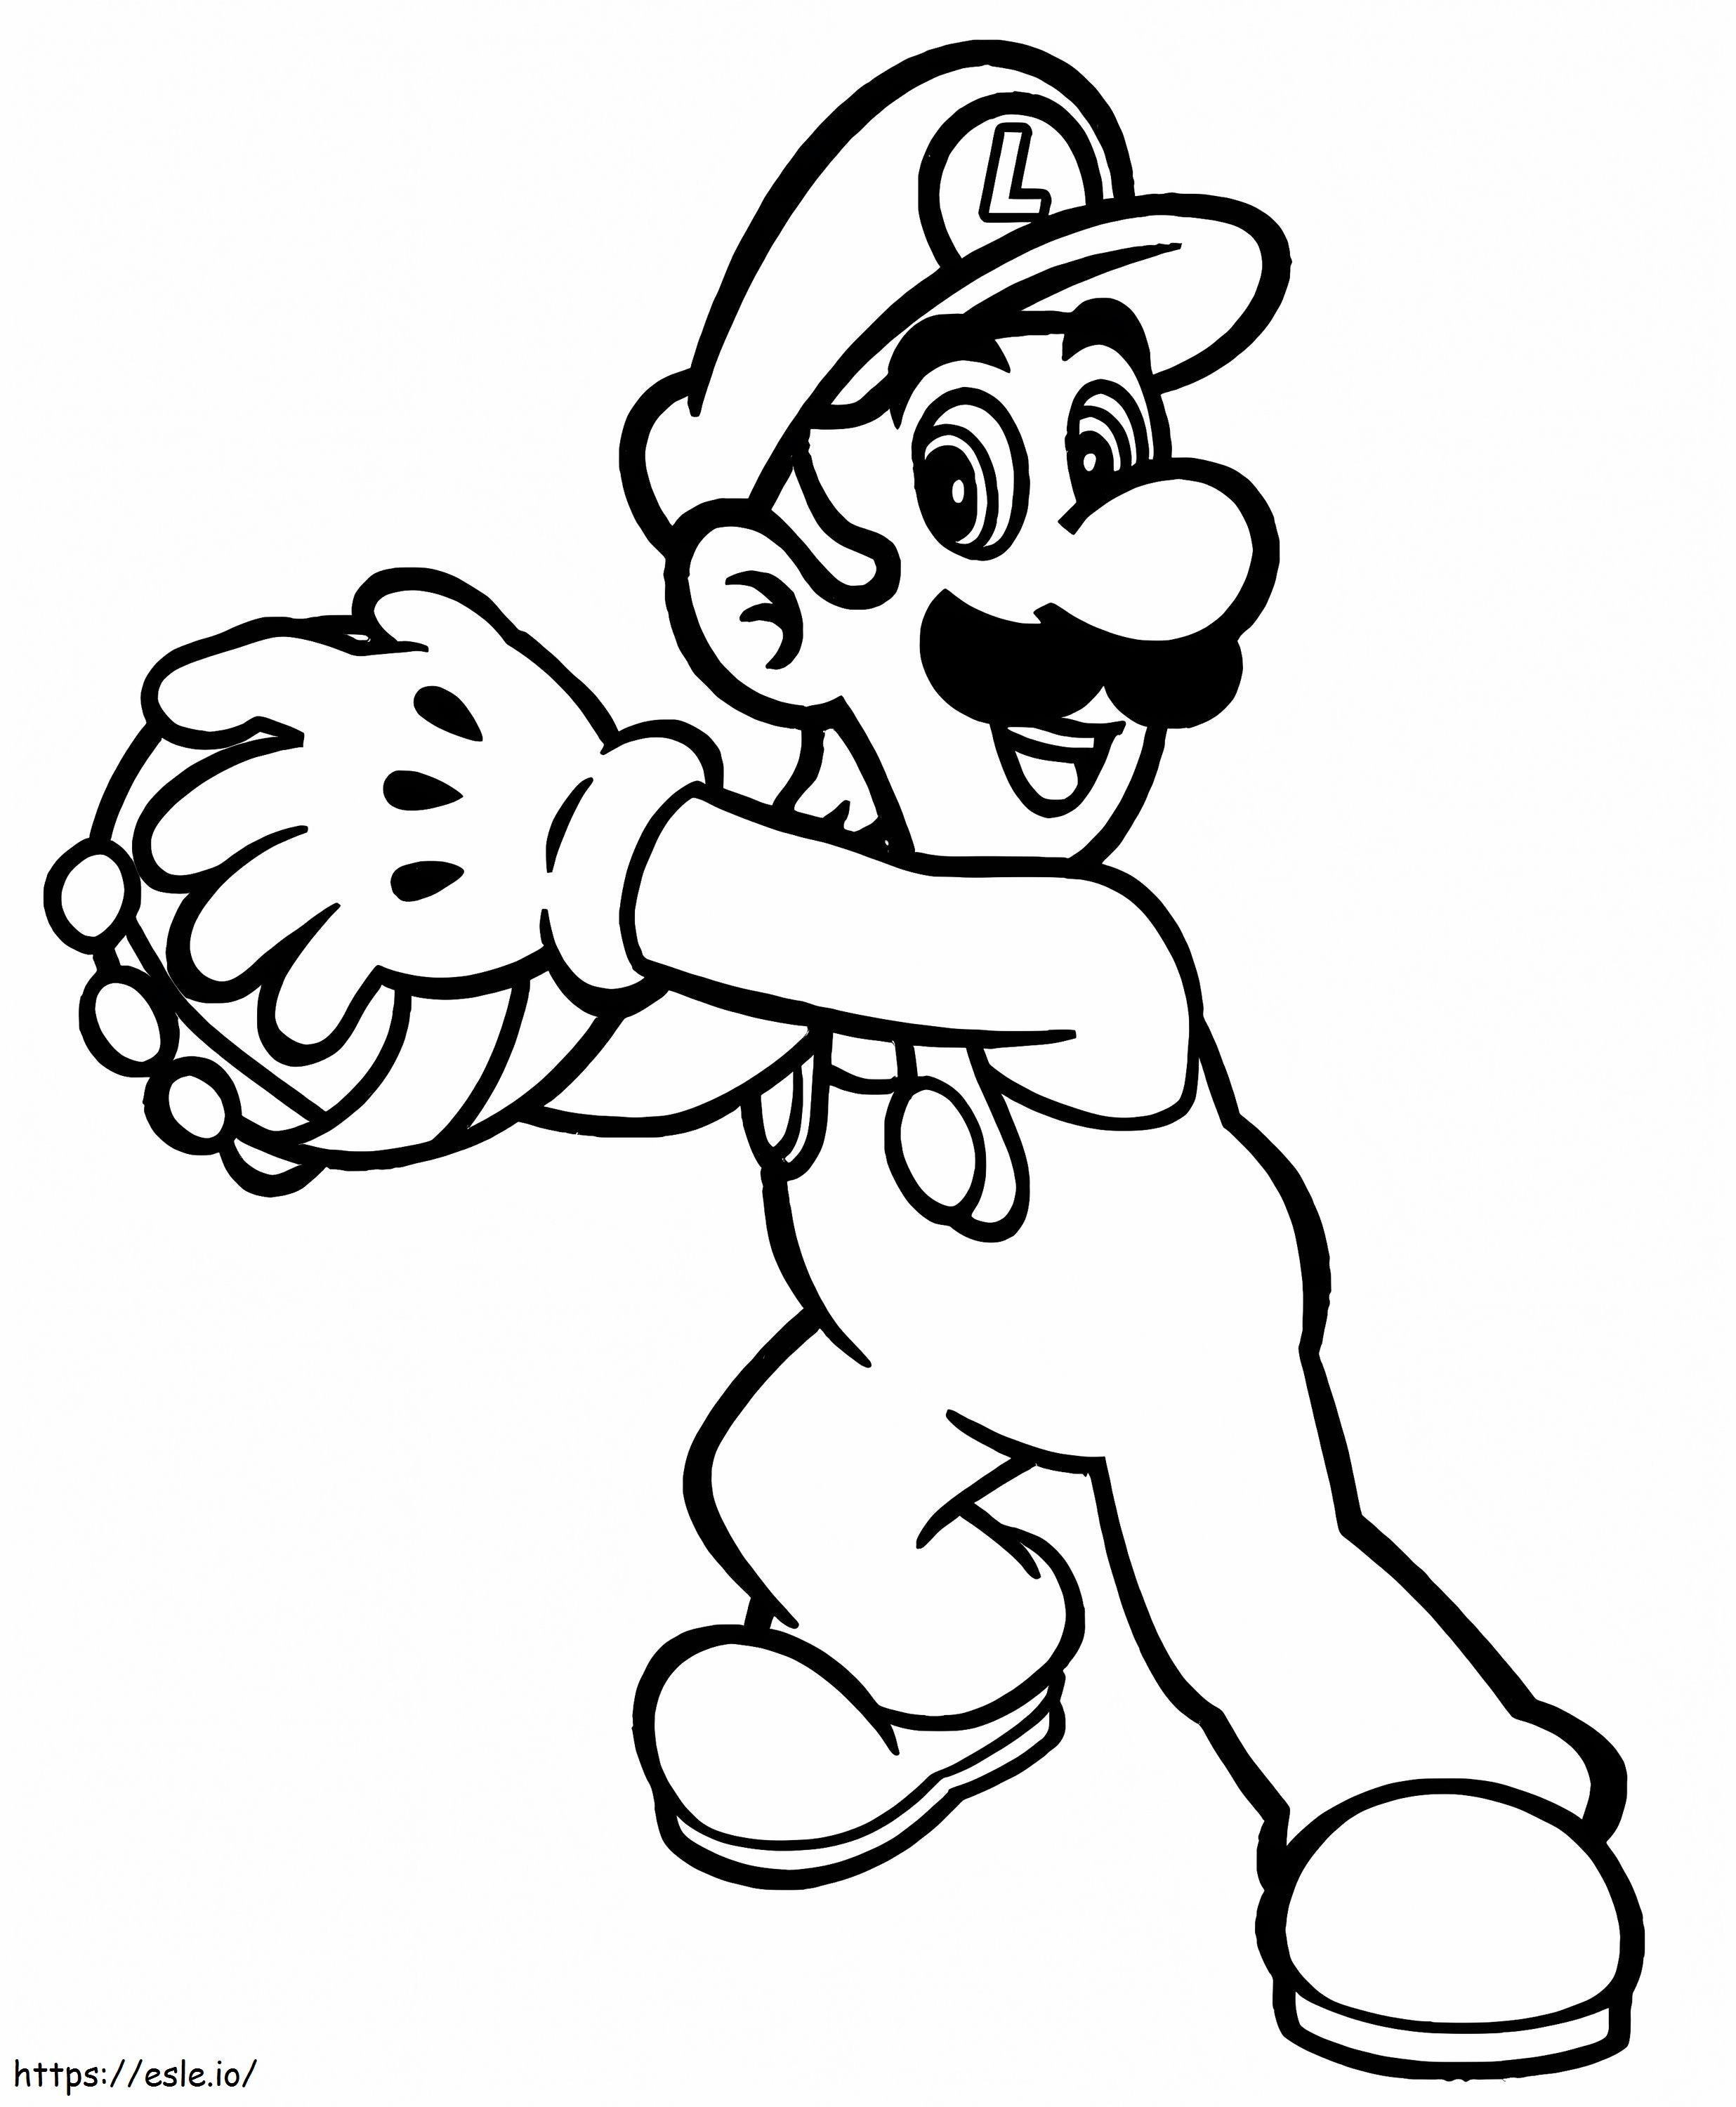 Louis De Super Mario 6 kleurplaat kleurplaat